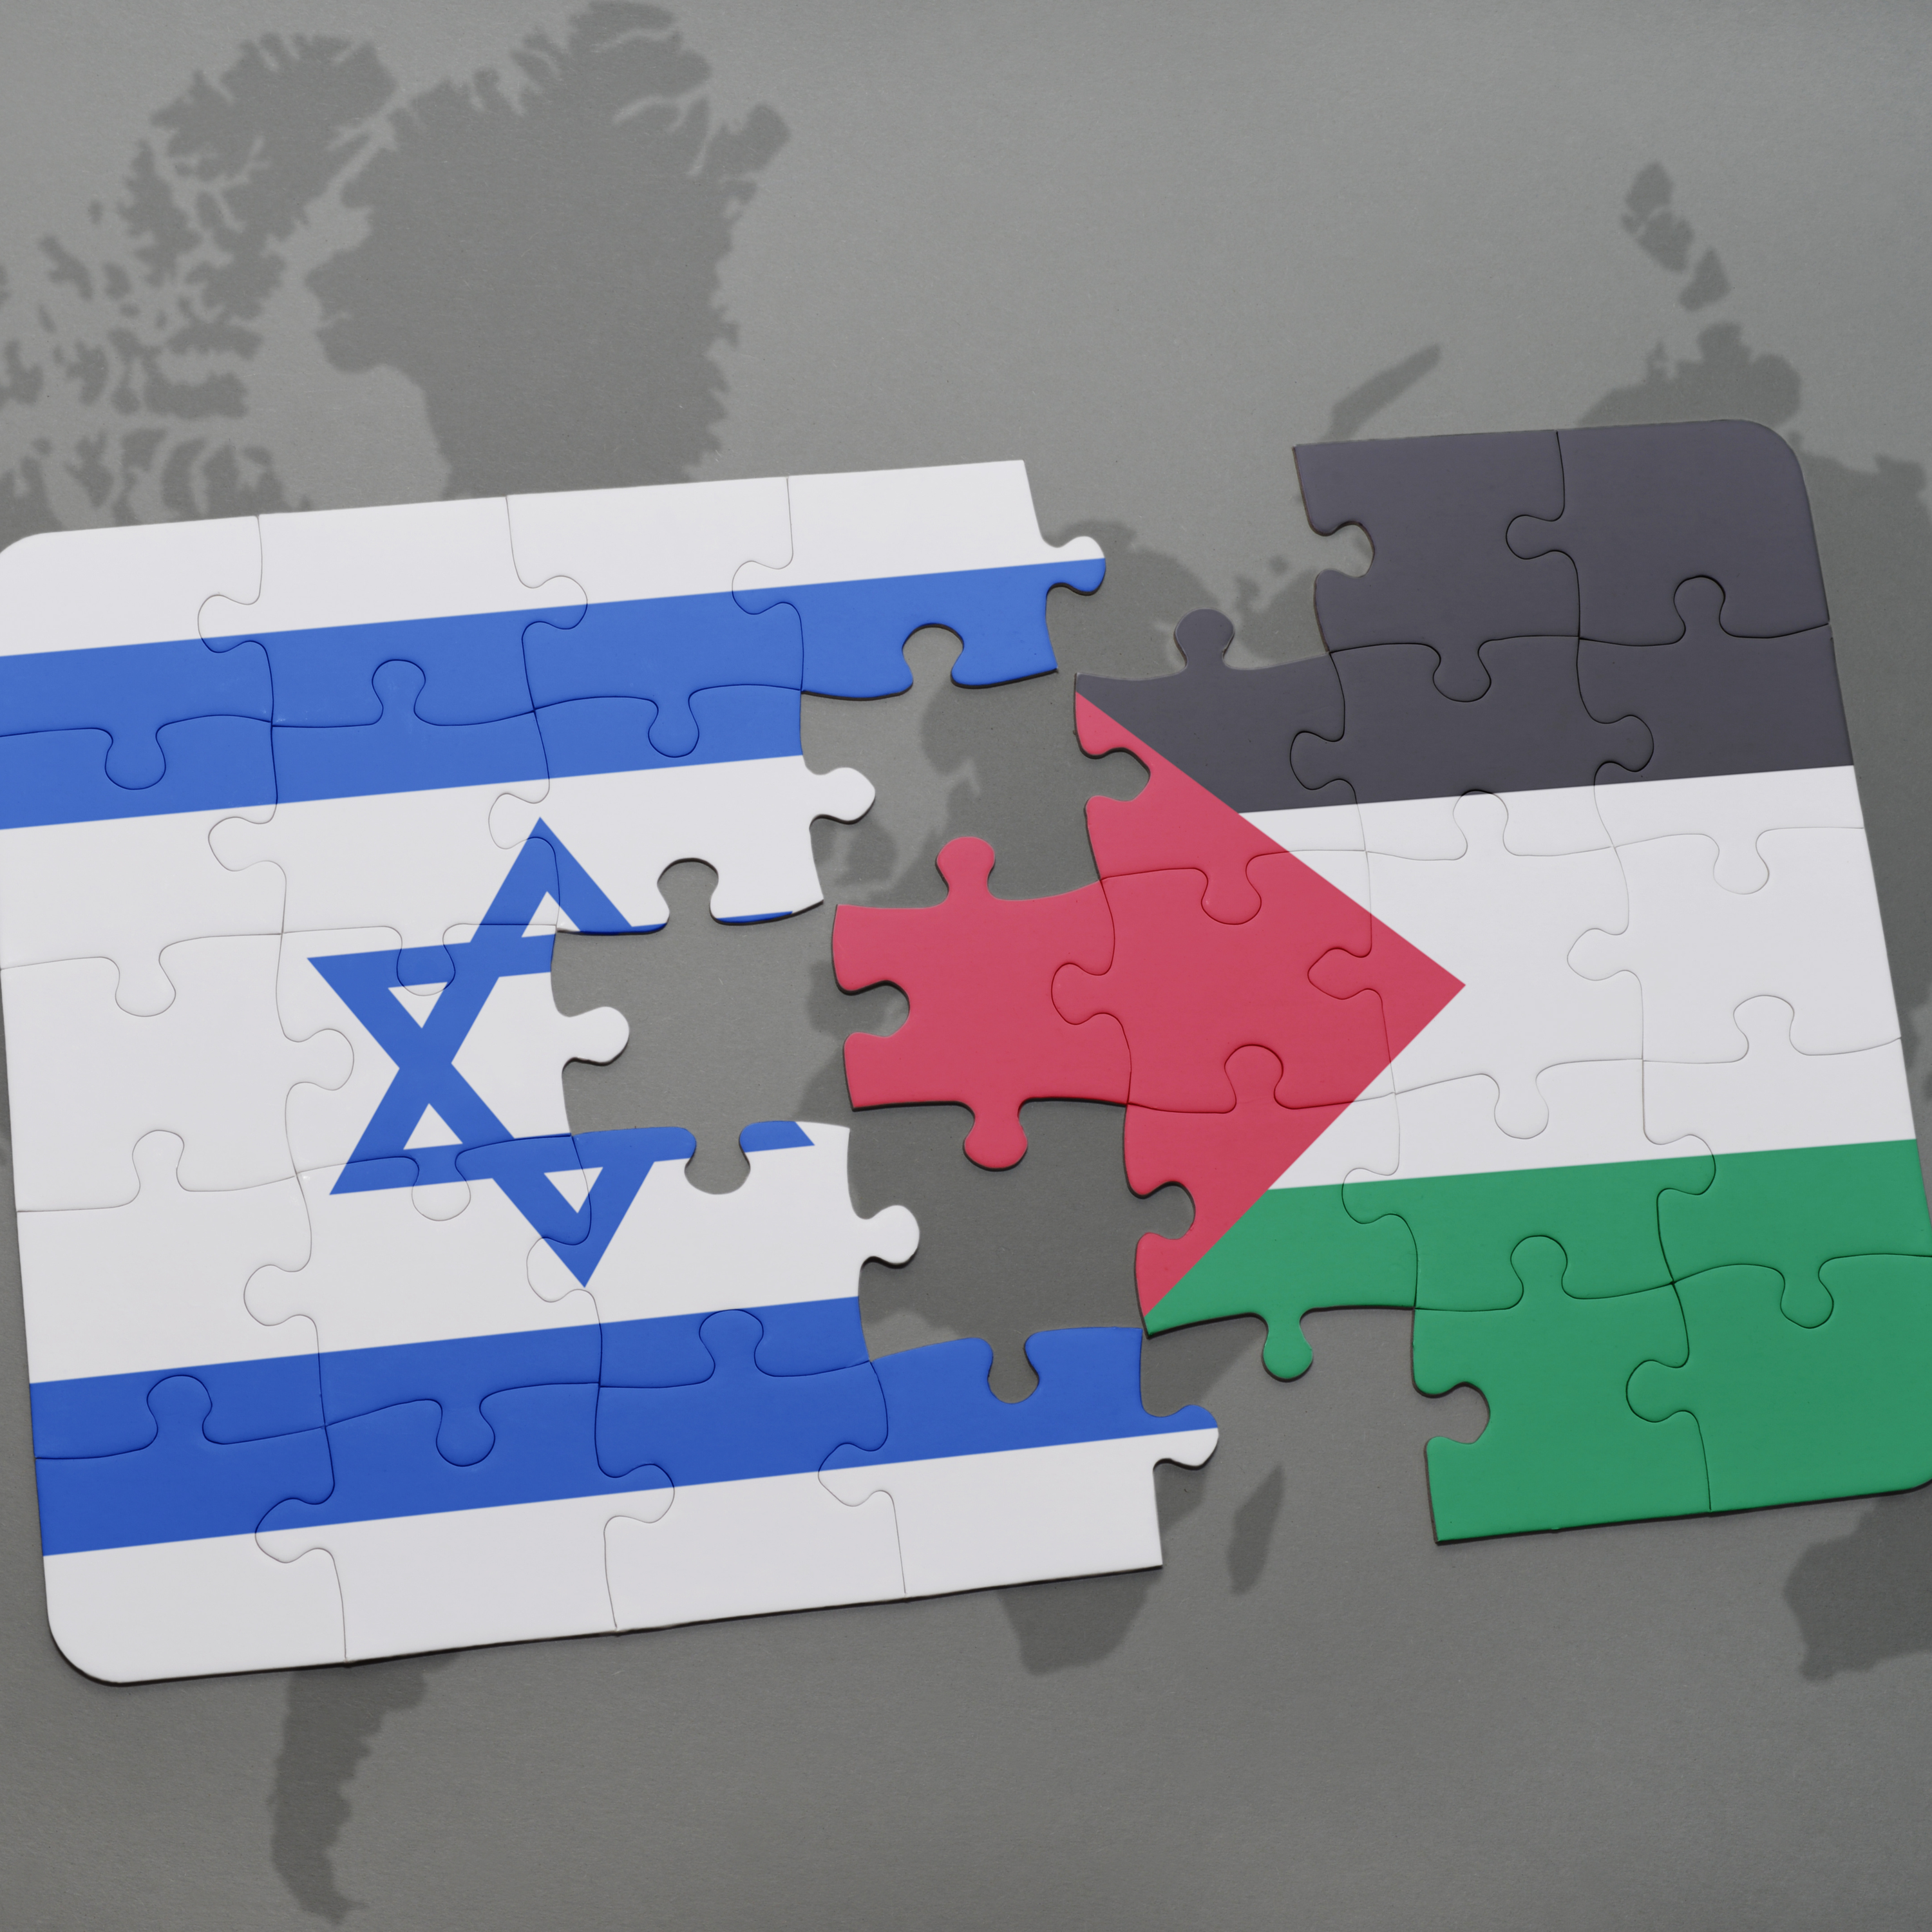 Die konflik tussen Israel en Palestina